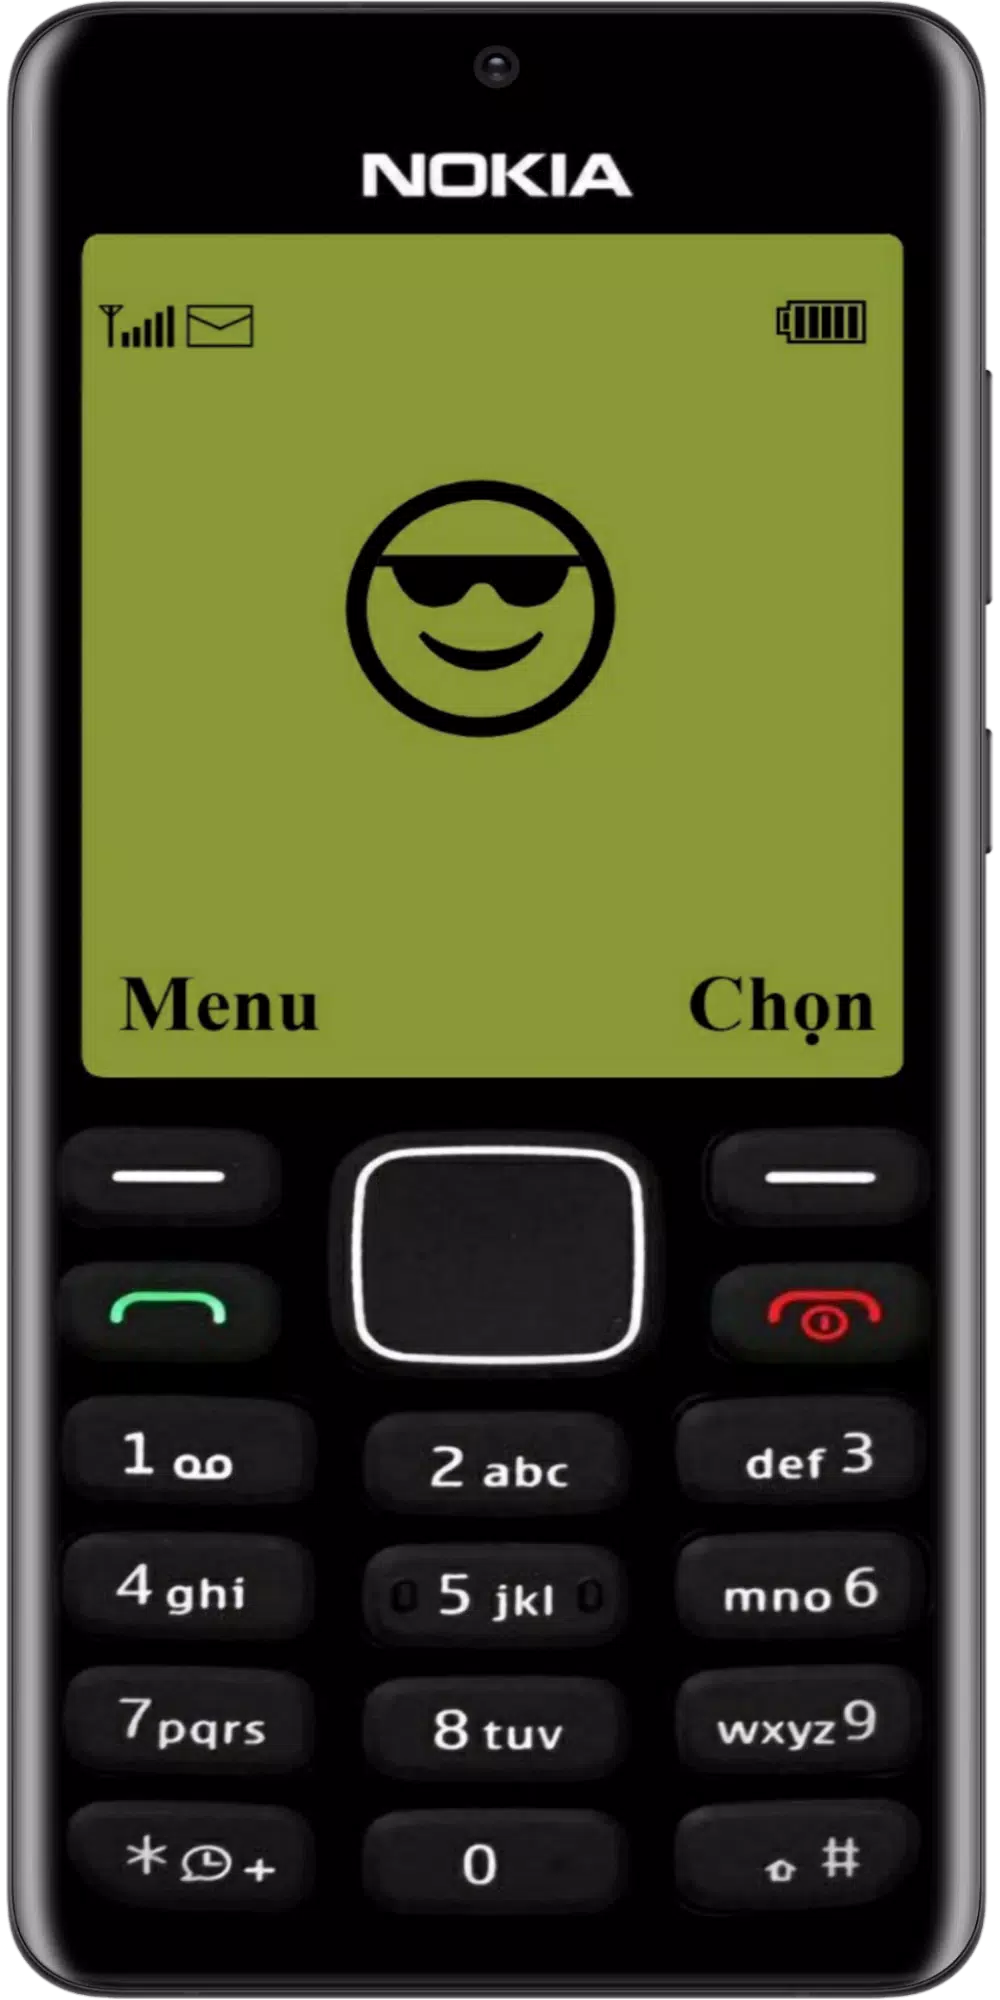 APK Simulator For Old Nokia: Với Simulator APK cho Nokia cũ, bạn sẽ được trải nghiệm những trò chơi và ứng dụng hấp dẫn từ những năm 2000 một cách dễ dàng và miễn phí. Tạo lại ký ức về những thời điểm đáng nhớ với chiếc điện thoại Nokia cũ của bạn ngay bây giờ.